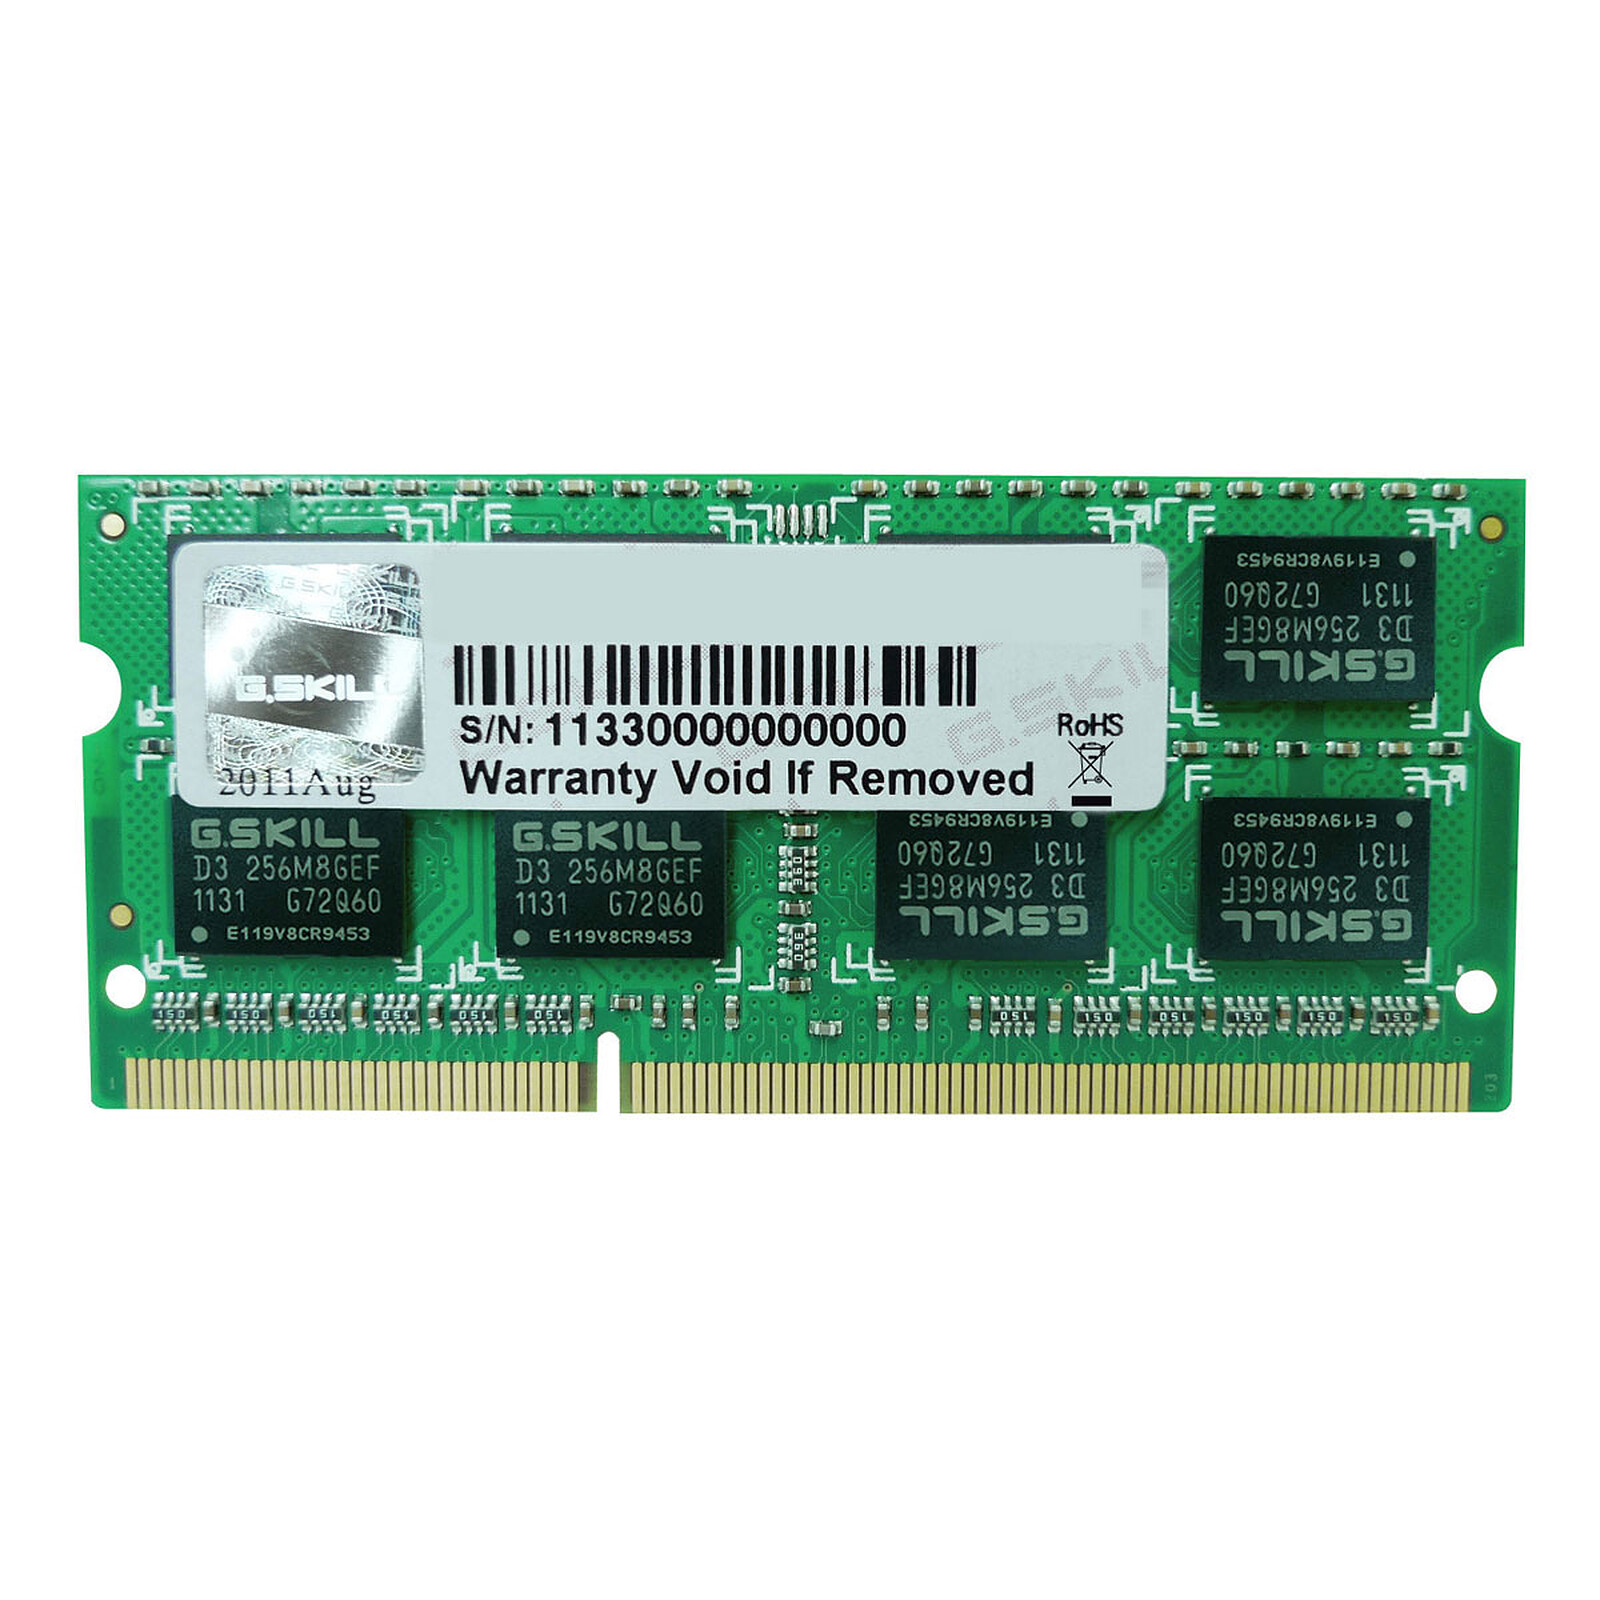 Corsair Value Select 8 Go (2x 4Go) DDR3 1333MHz CL9 - Mémoire PC - LDLC